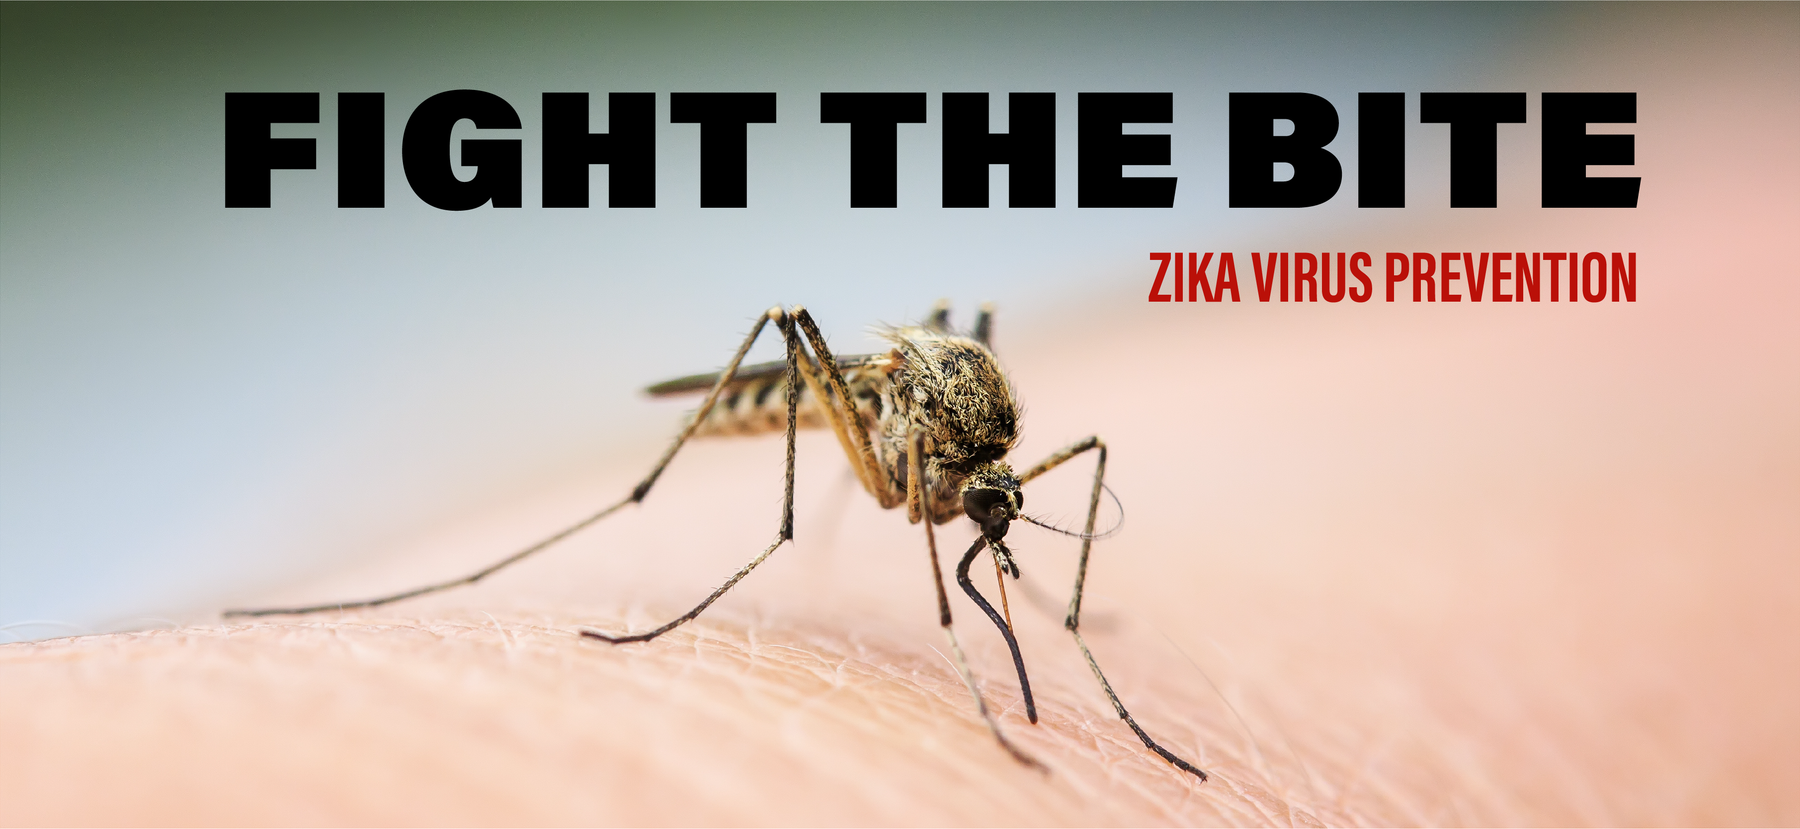 Fight the Bite: Zika Virus Prevention Thumbnail